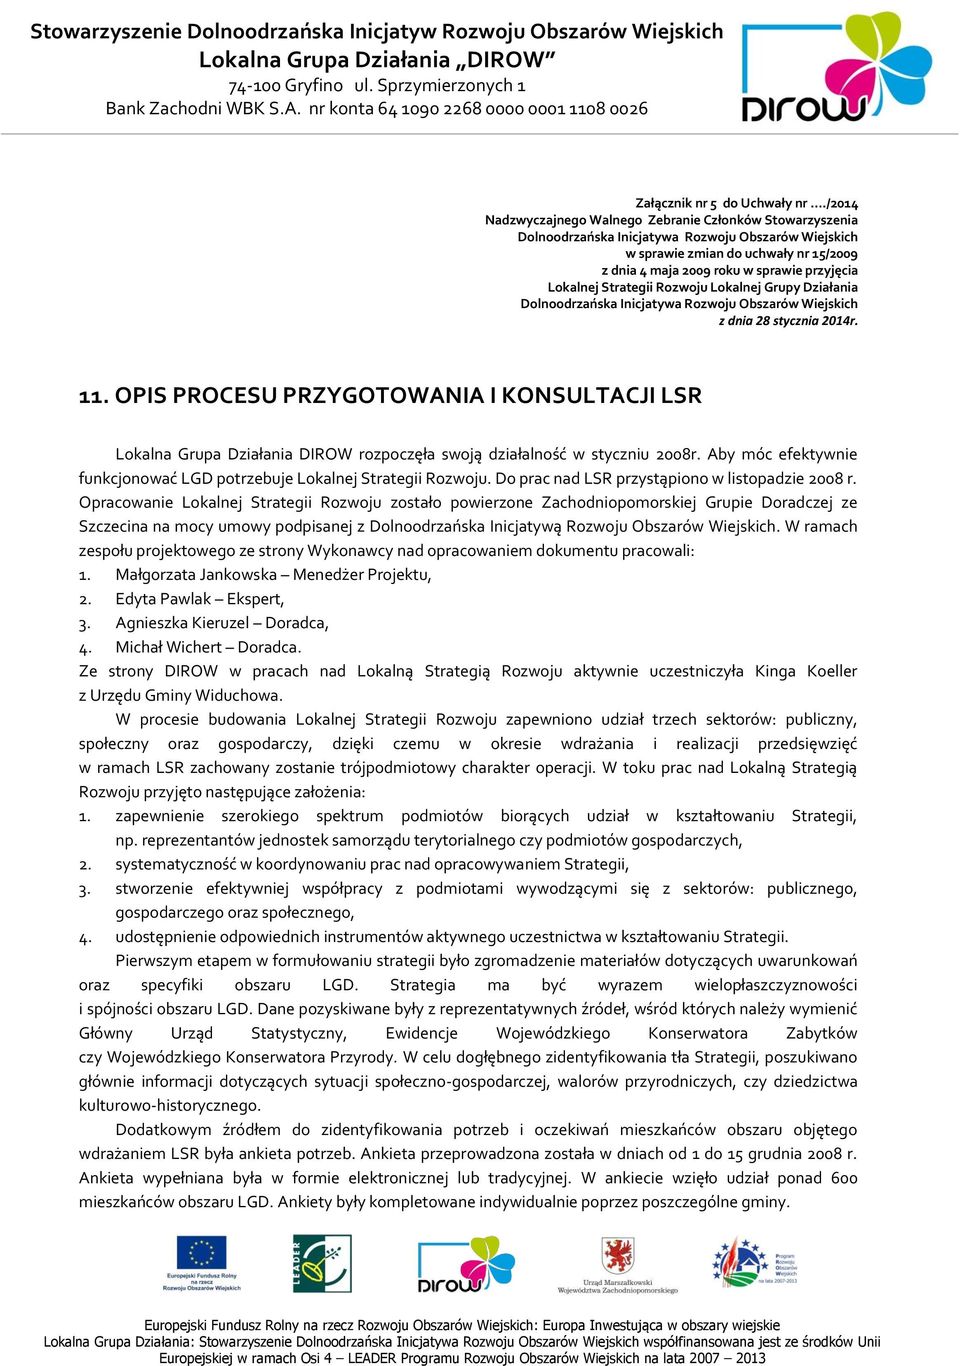 Lokalnej Strategii Rozwoju Lokalnej Grupy Działania Dolnoodrzańska Inicjatywa Rozwoju Obszarów Wiejskich z dnia 28 stycznia 2014r. 11.